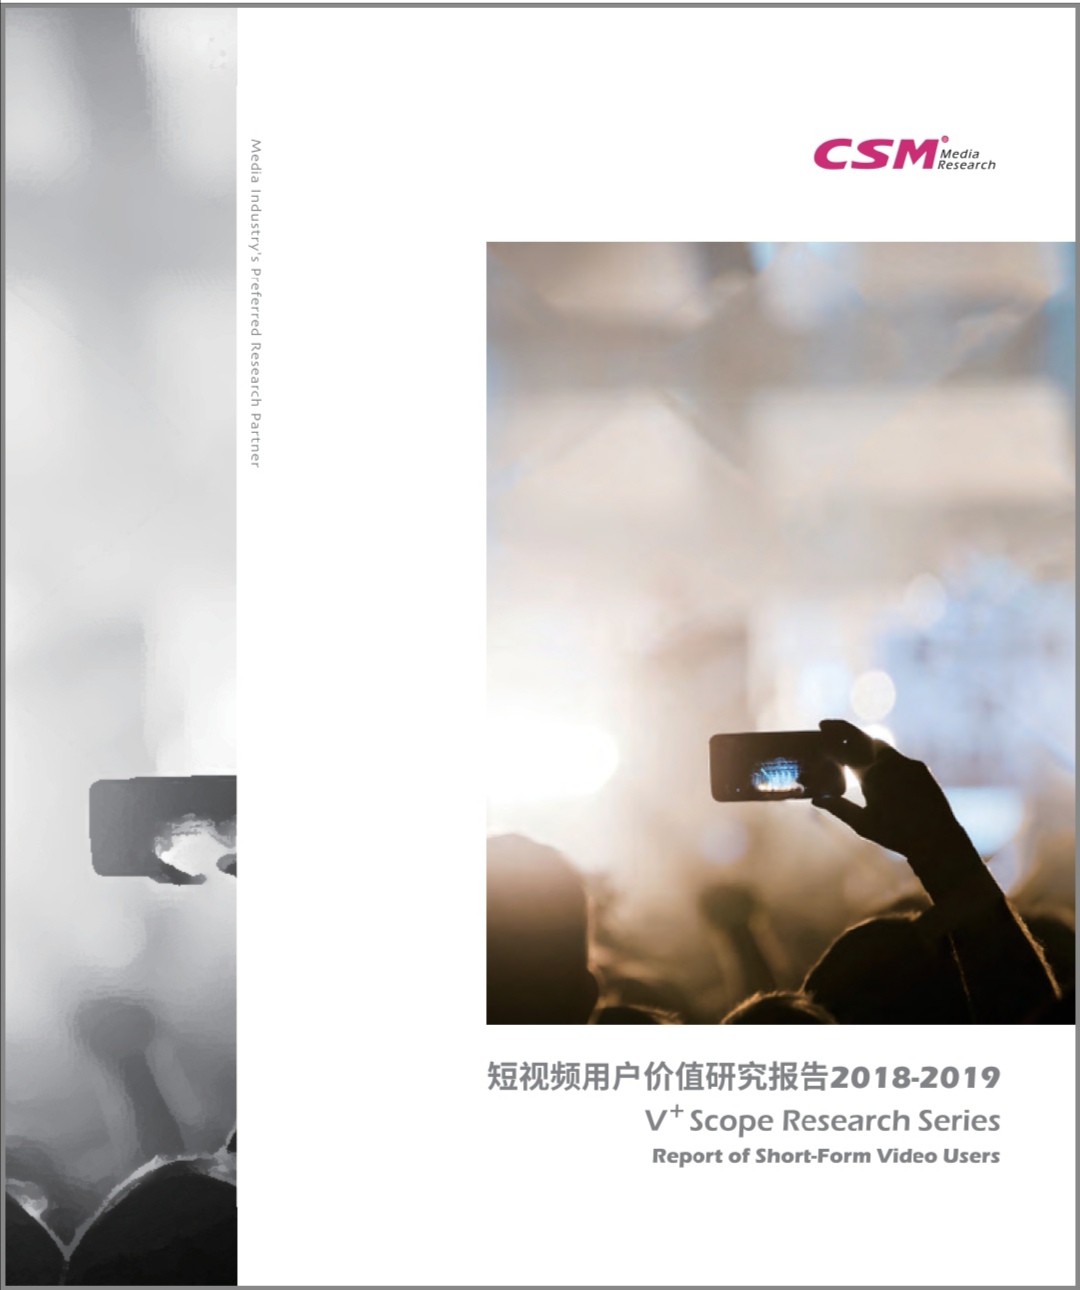  《短视频用户价值研究报告2018-2019》封面。